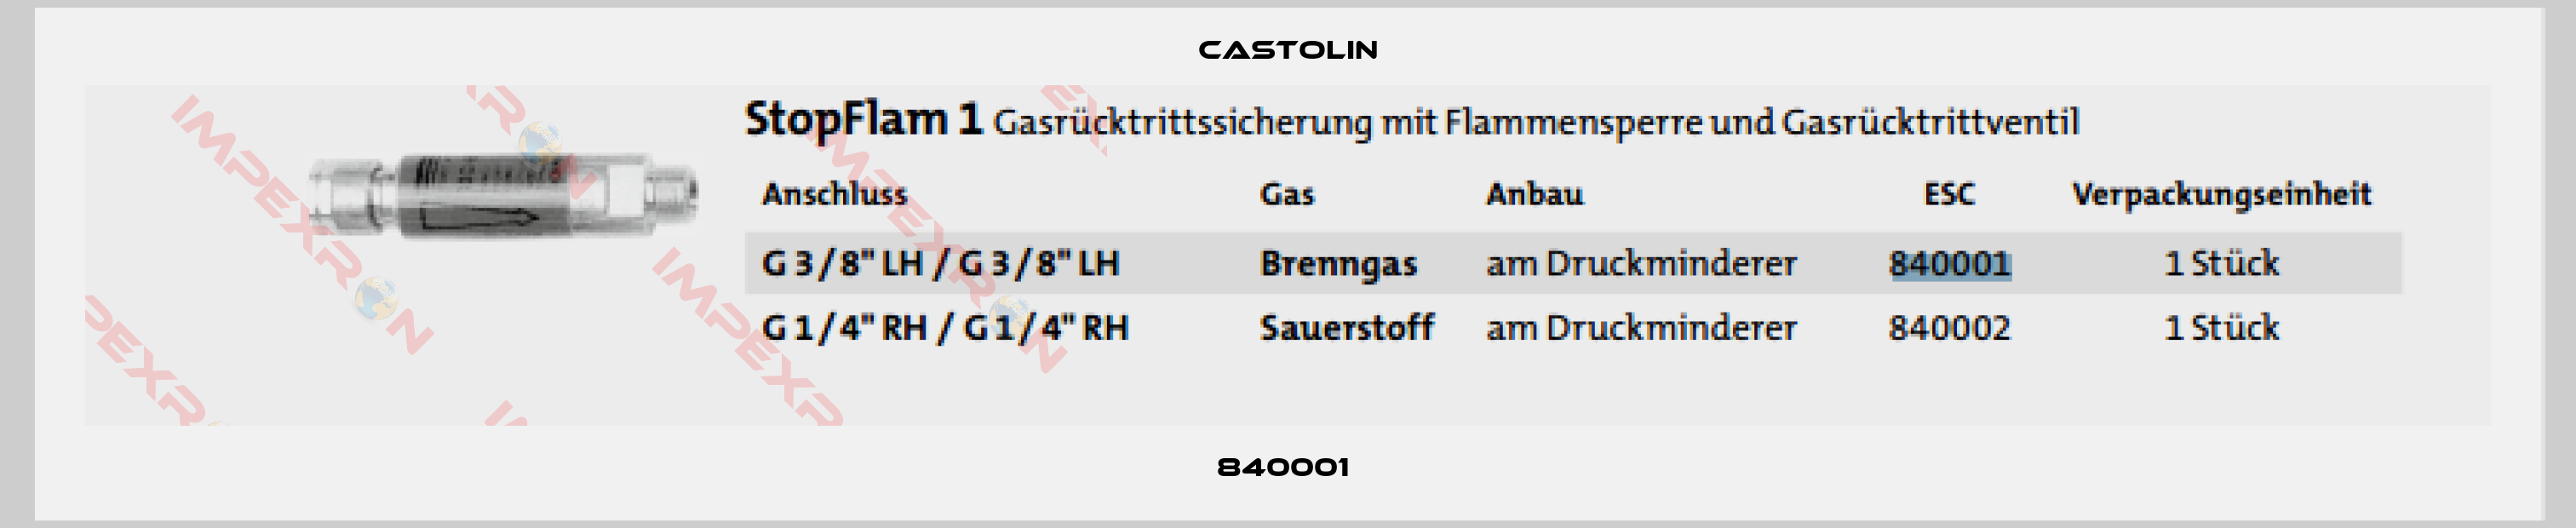 Castolin-840001 